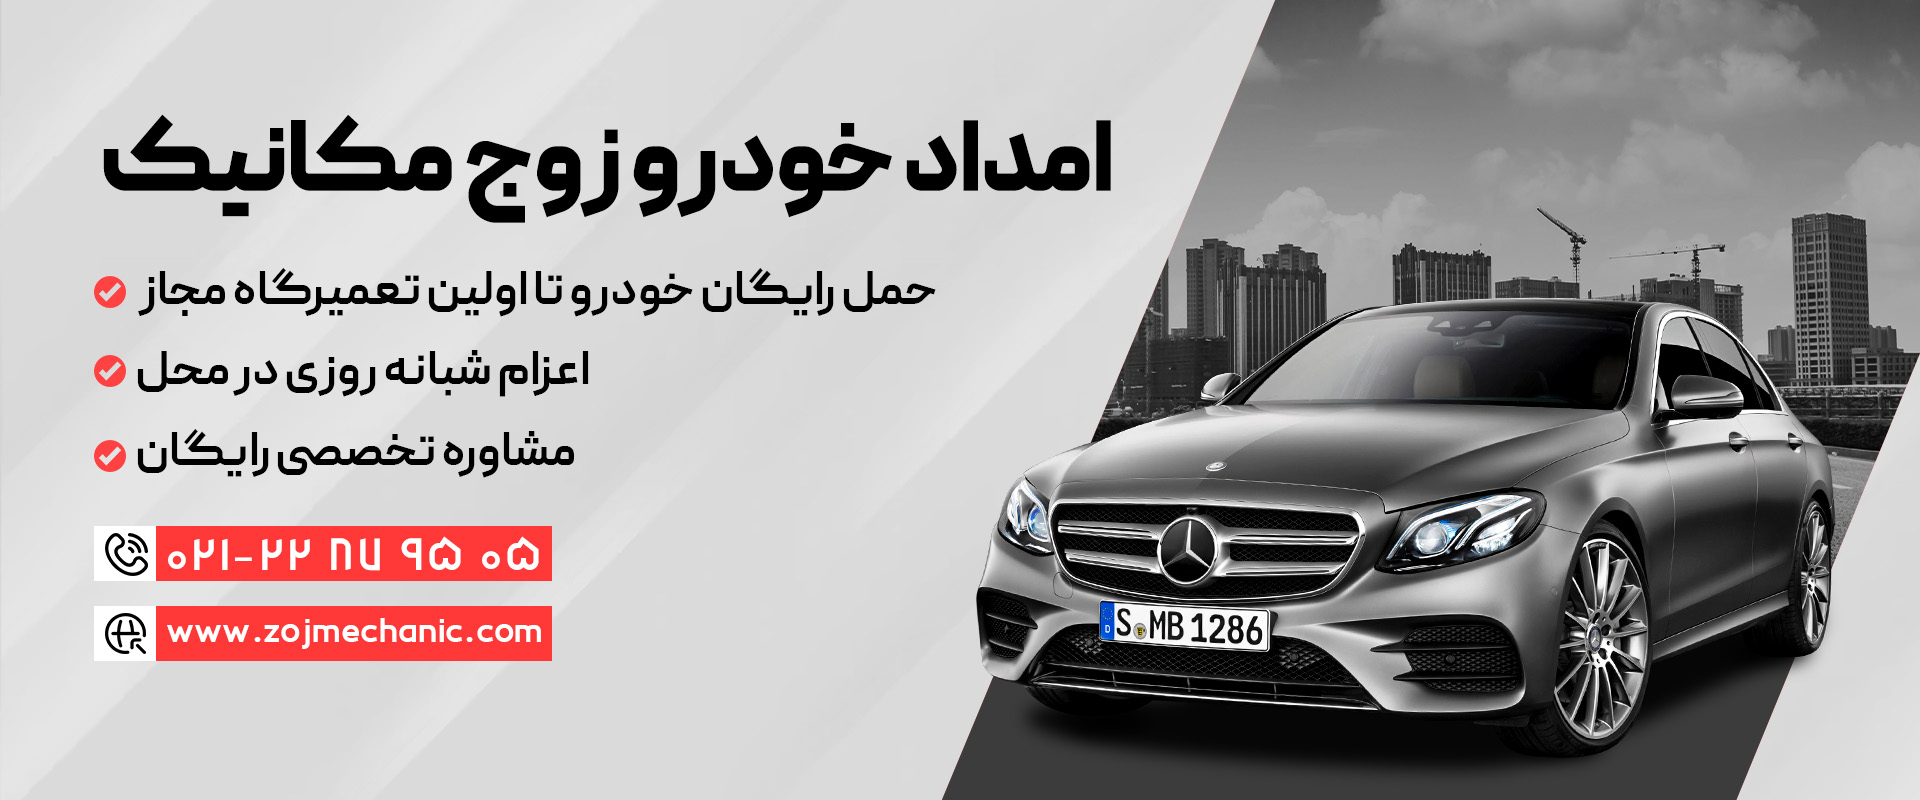 نمایندگی بنز و عاملیت مجاز شرکت رسمی مرسدس بنز (Benz) در شهر تهران + خدمات